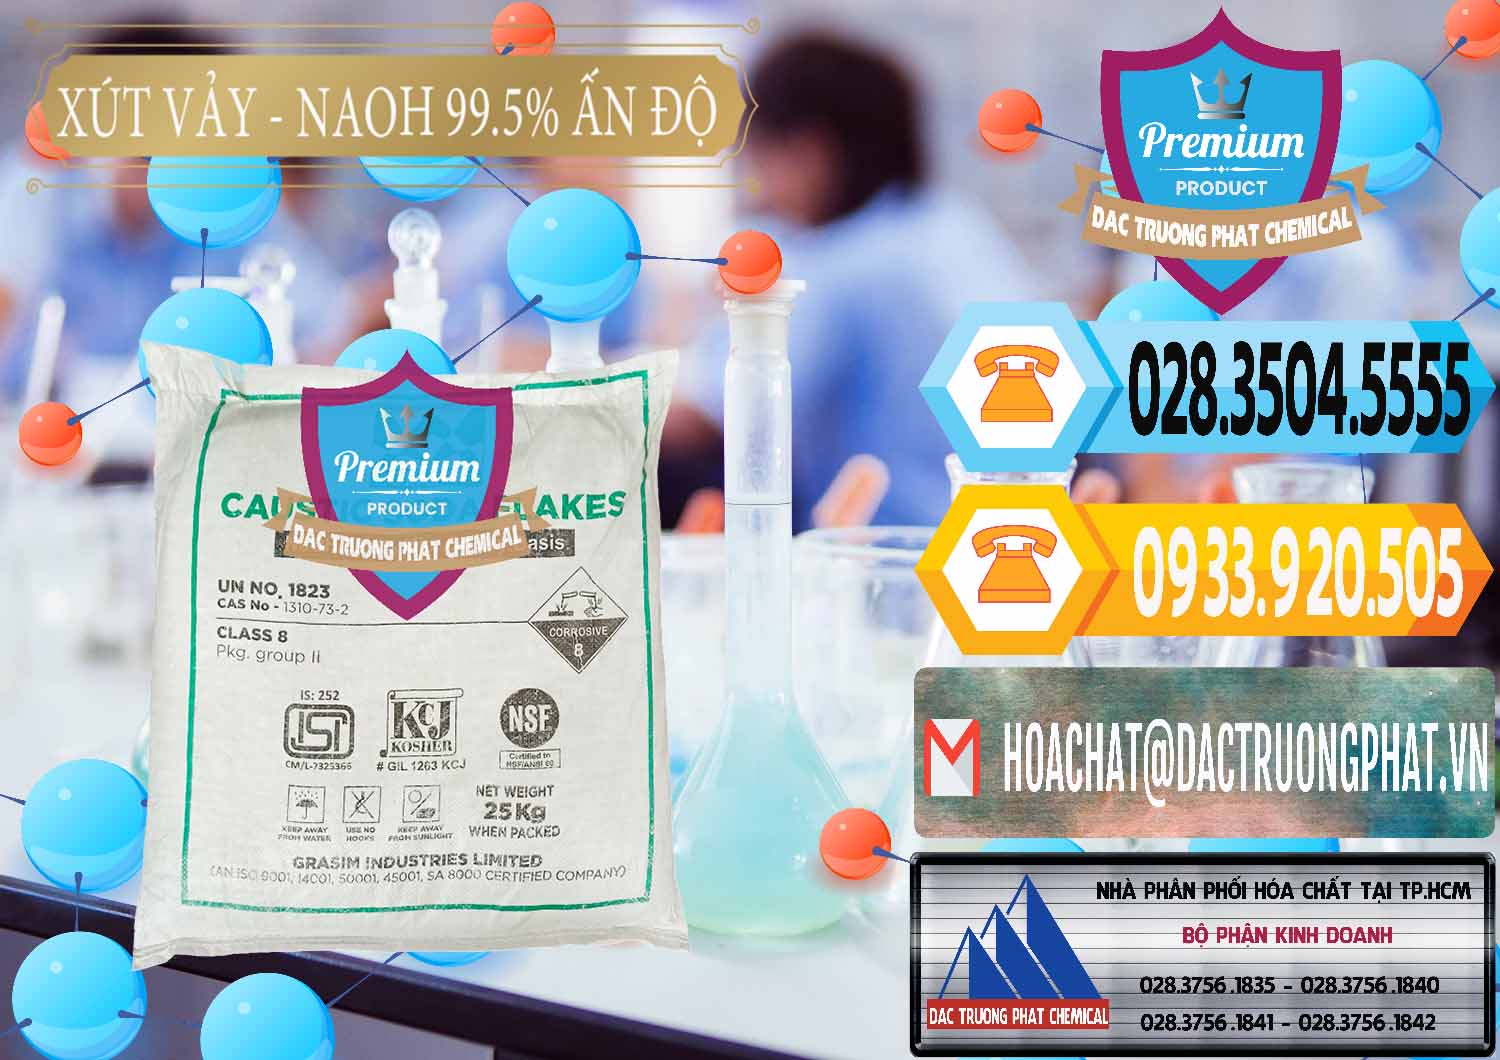 Kinh doanh và bán Xút Vảy - NaOH Vảy 99.5% Aditya Birla Grasim Ấn Độ India - 0170 - Chuyên phân phối & cung cấp hóa chất tại TP.HCM - hoachattayrua.net